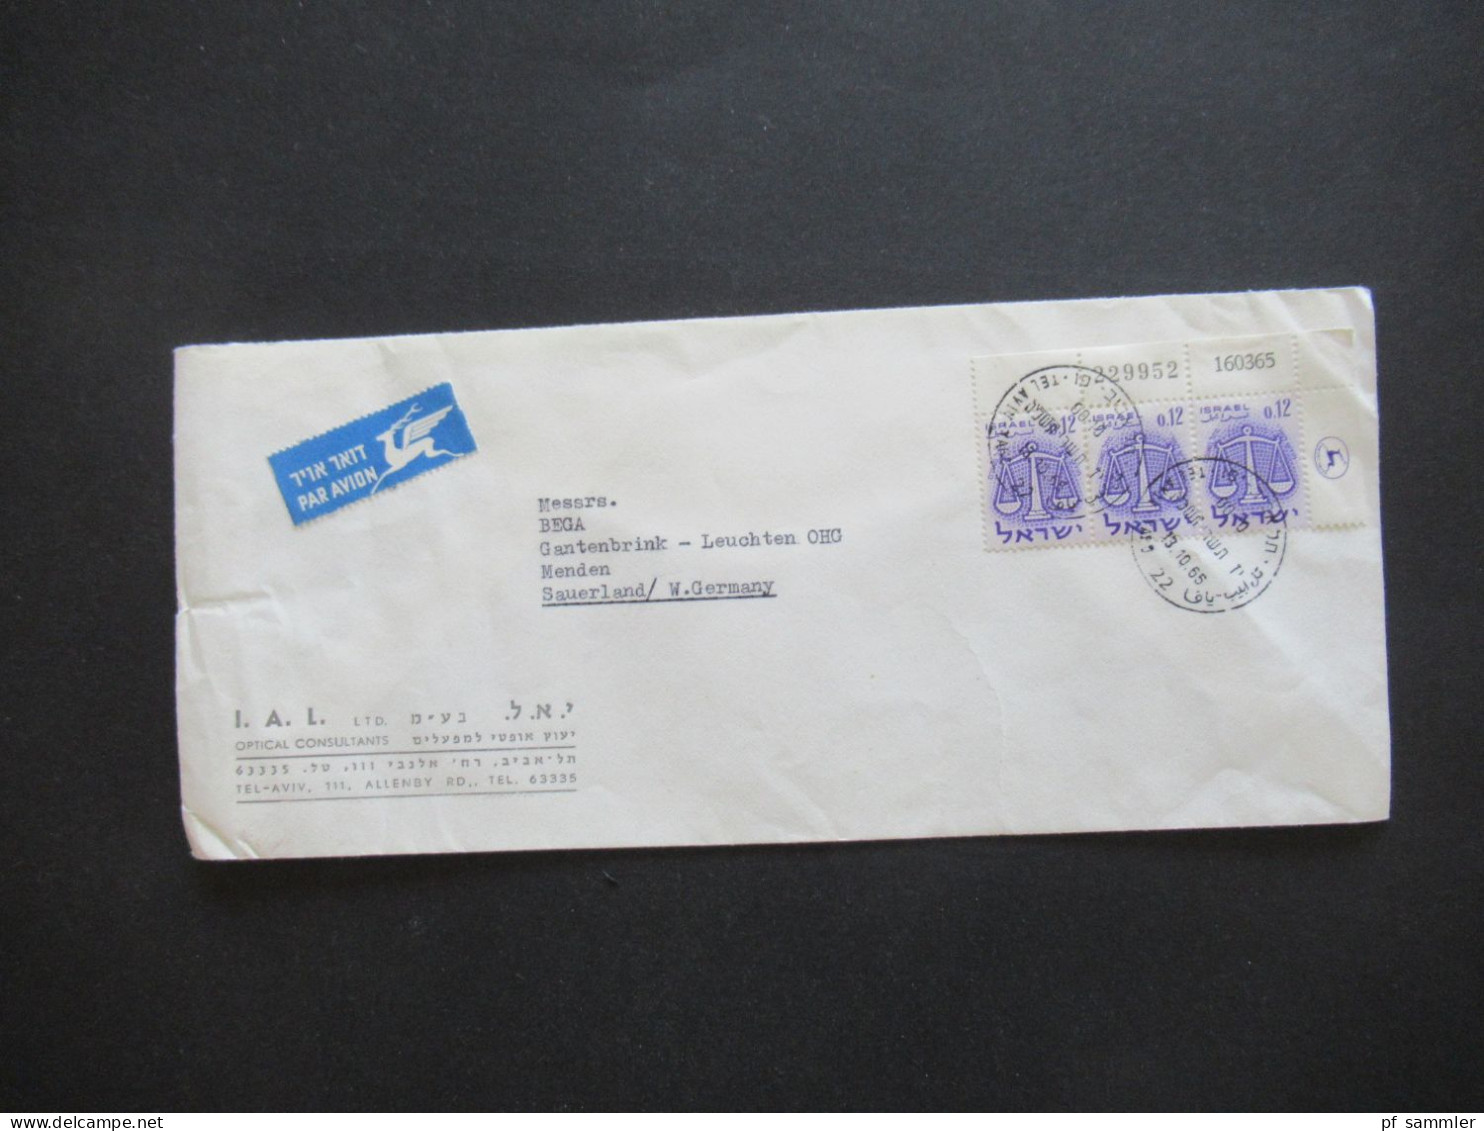 Israel 1965 Marken Als Eckrand 3er Streifen! Bogenbedruckung! Par Avion Luftpost Auslandsbrief Tel Aviv - Menden Sauerla - Lettres & Documents